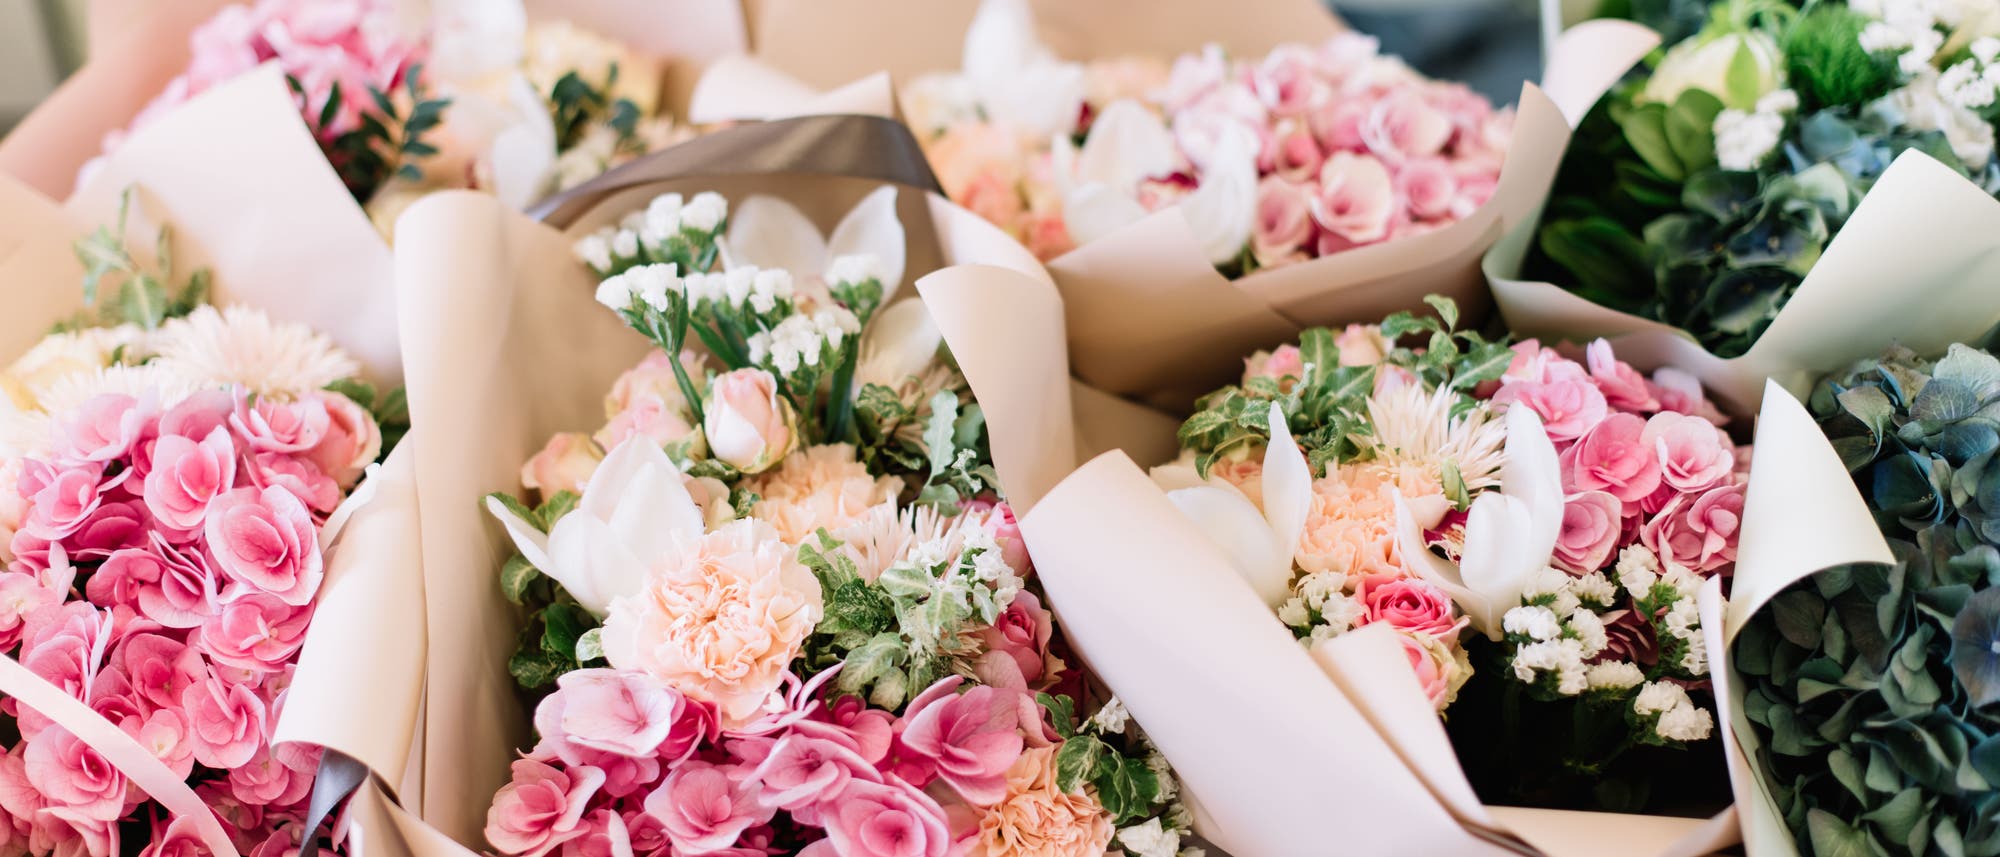 Auf einem Tisch liegen mehrere bunte Sträuße mit Hortrensien, Rosen, Pfingstrosen und anderen Blumen.